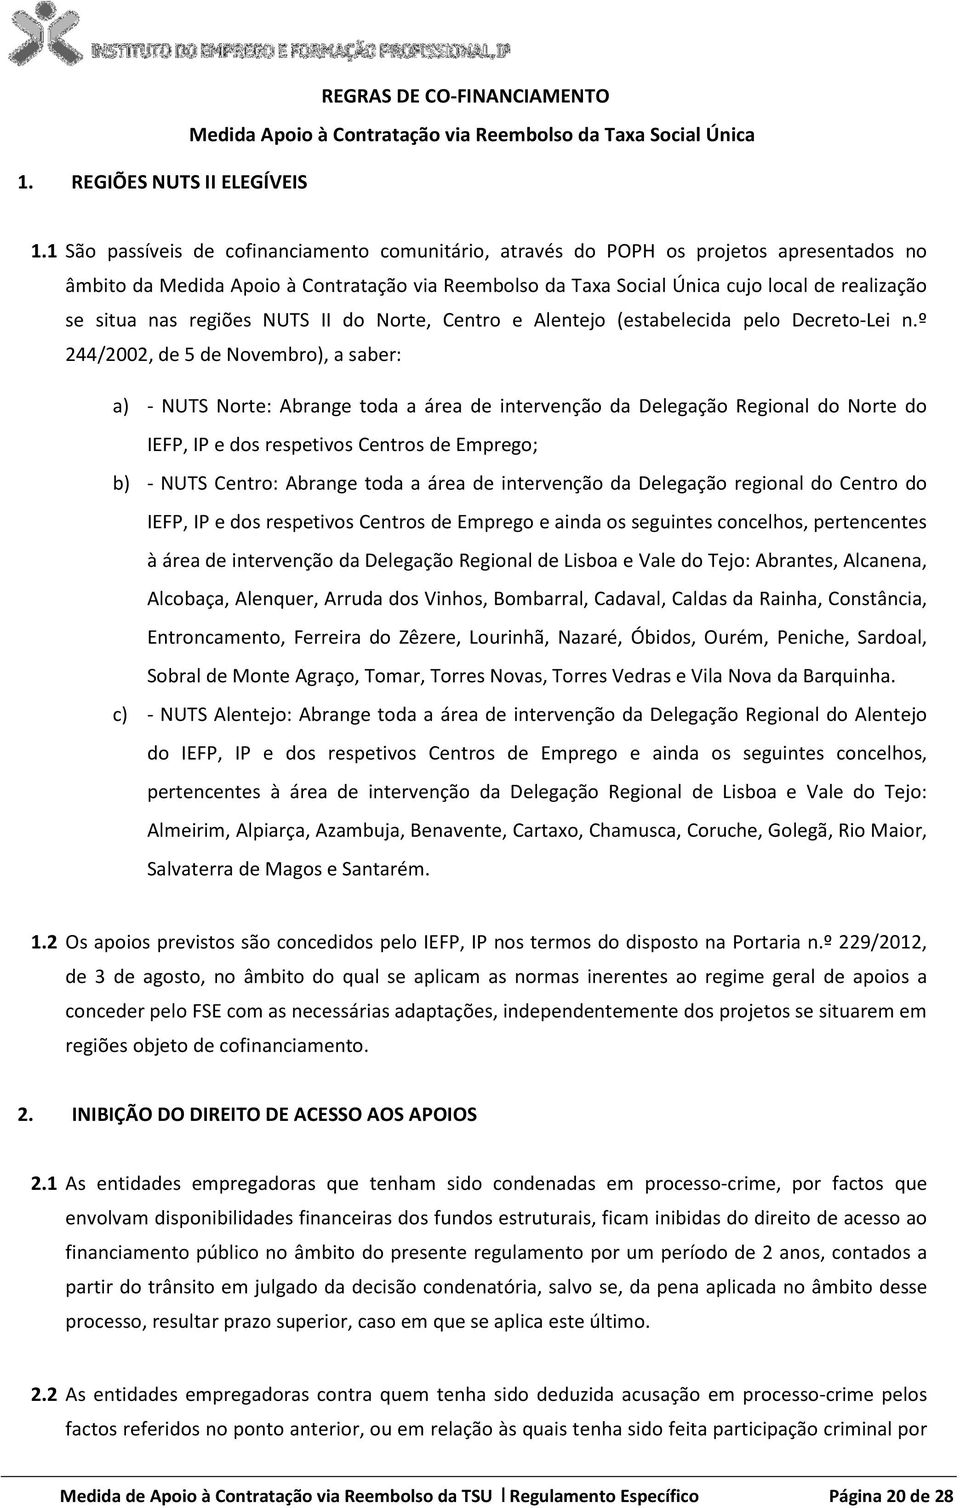 nas regiões NUTS II do Norte, Centro e Alentejo (estabelecida pelo Decreto-Lei n.